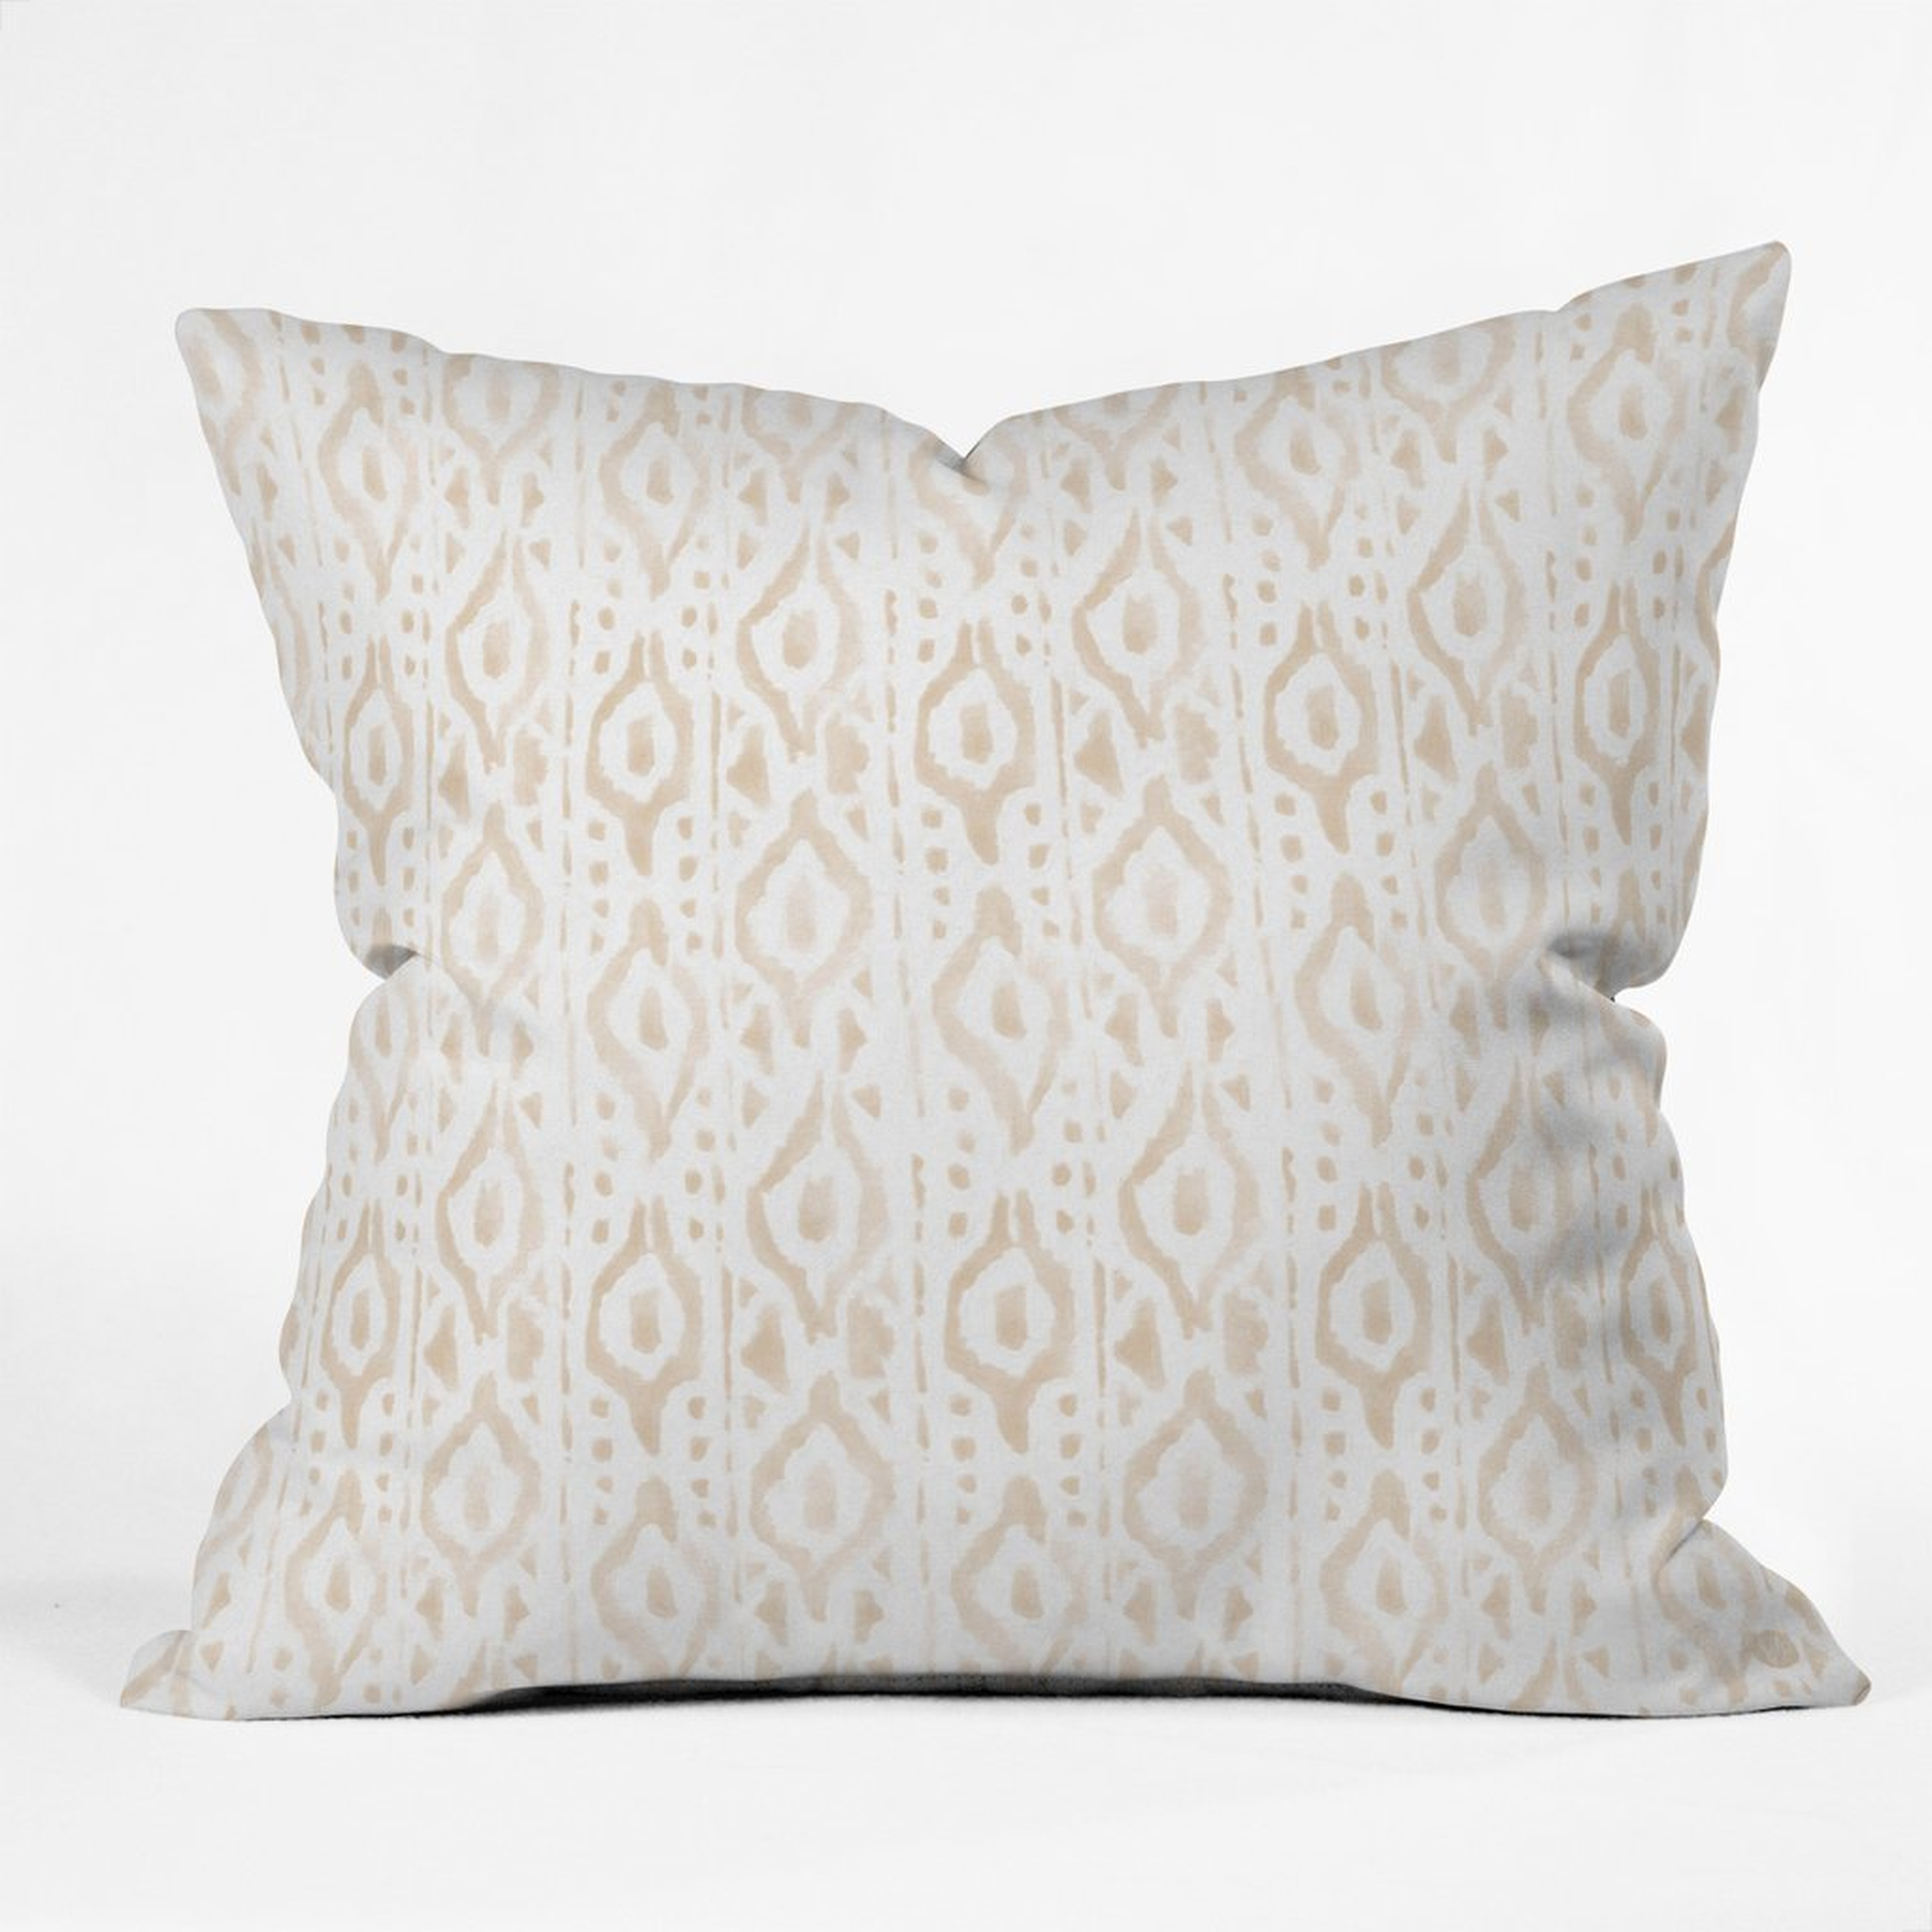 DESERT LINEN Throw Pillow - 20" x 20" - Polyester Insert - Wander Print Co.